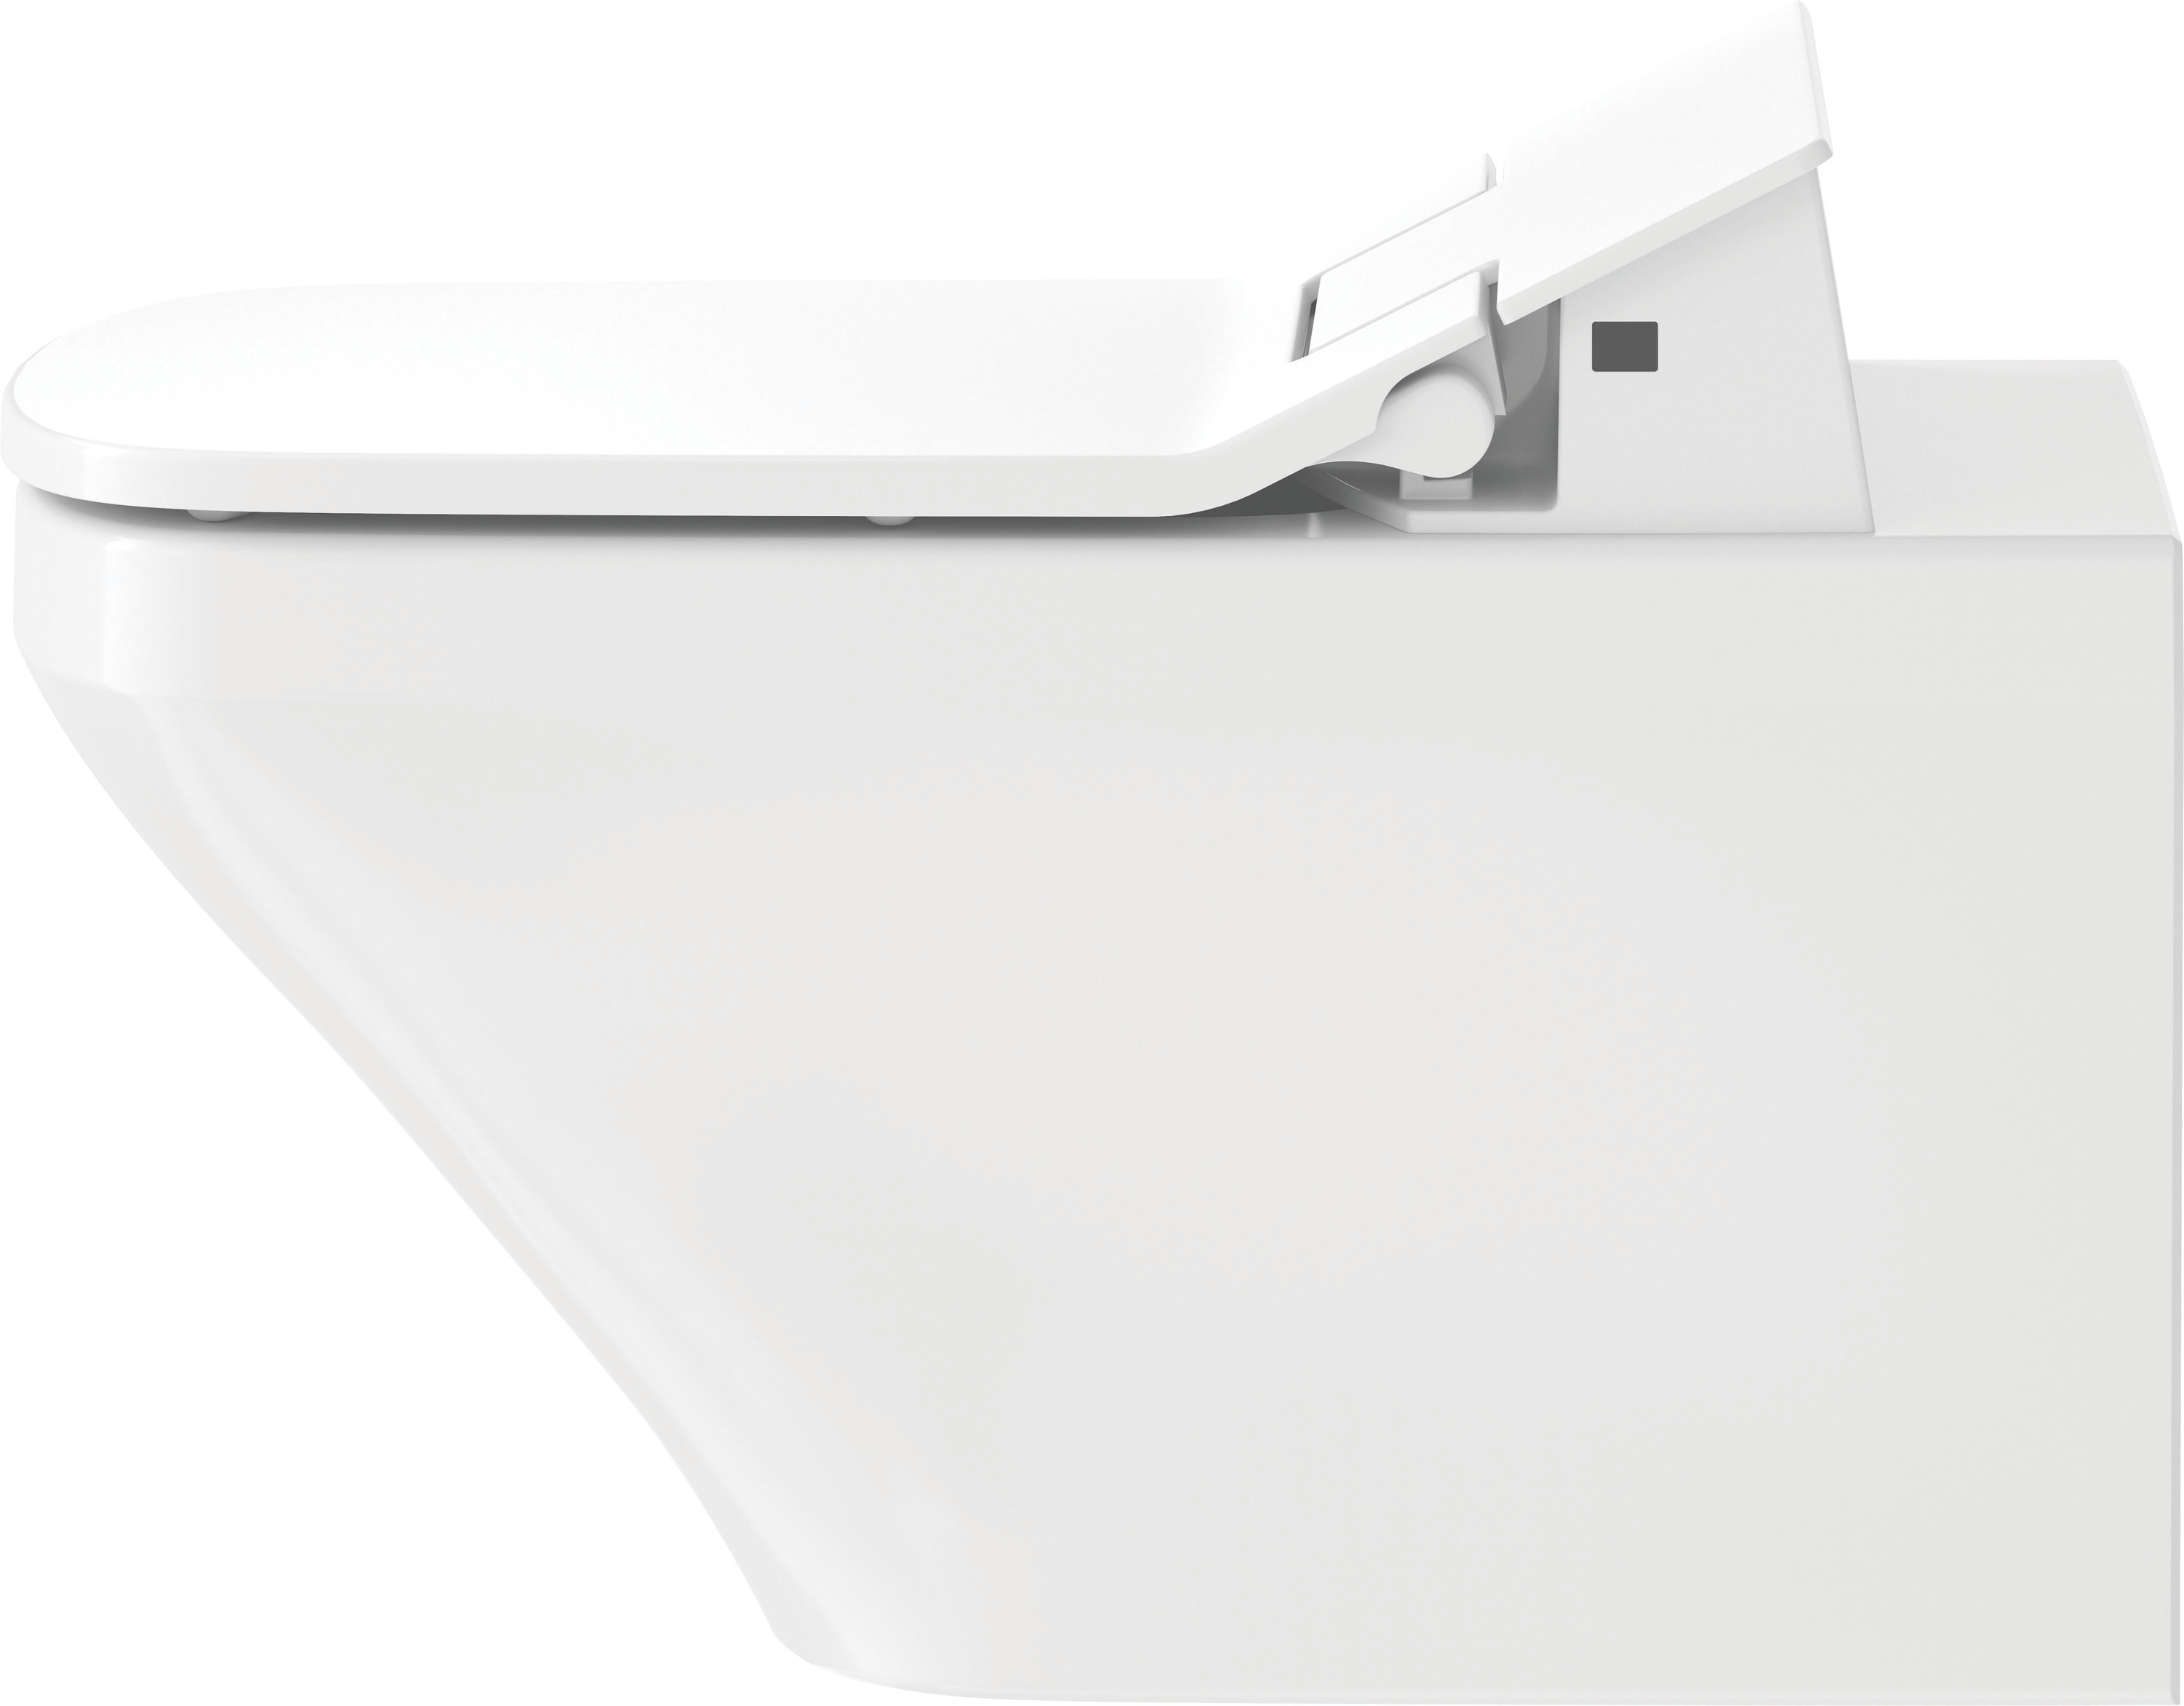 Wand-WC DuraStyle 620 mm, Tiefspüler Durafix, fürSW mitverd.Anschl., weiß, HYG